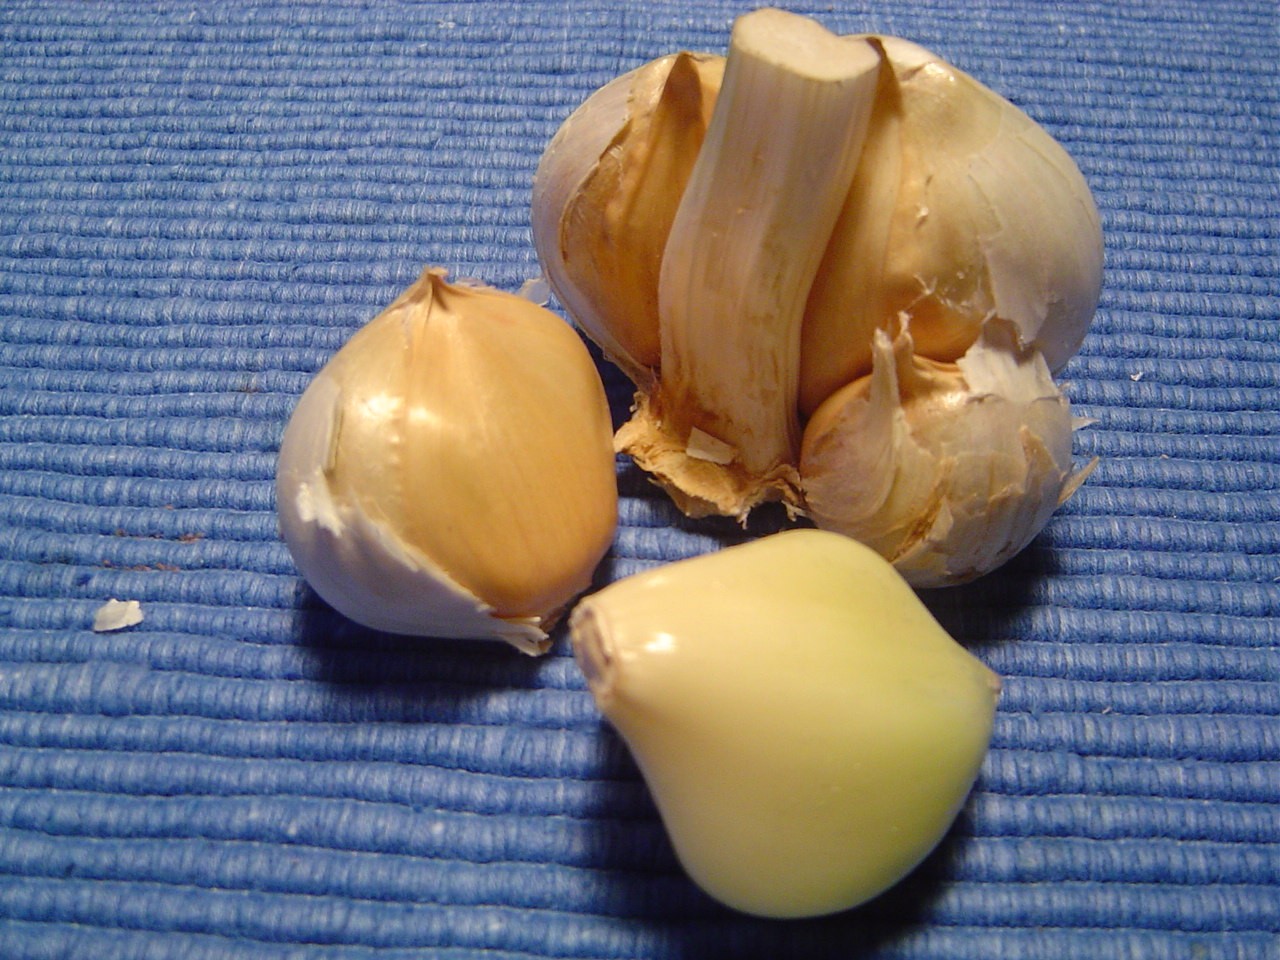 Garlic (299k image)